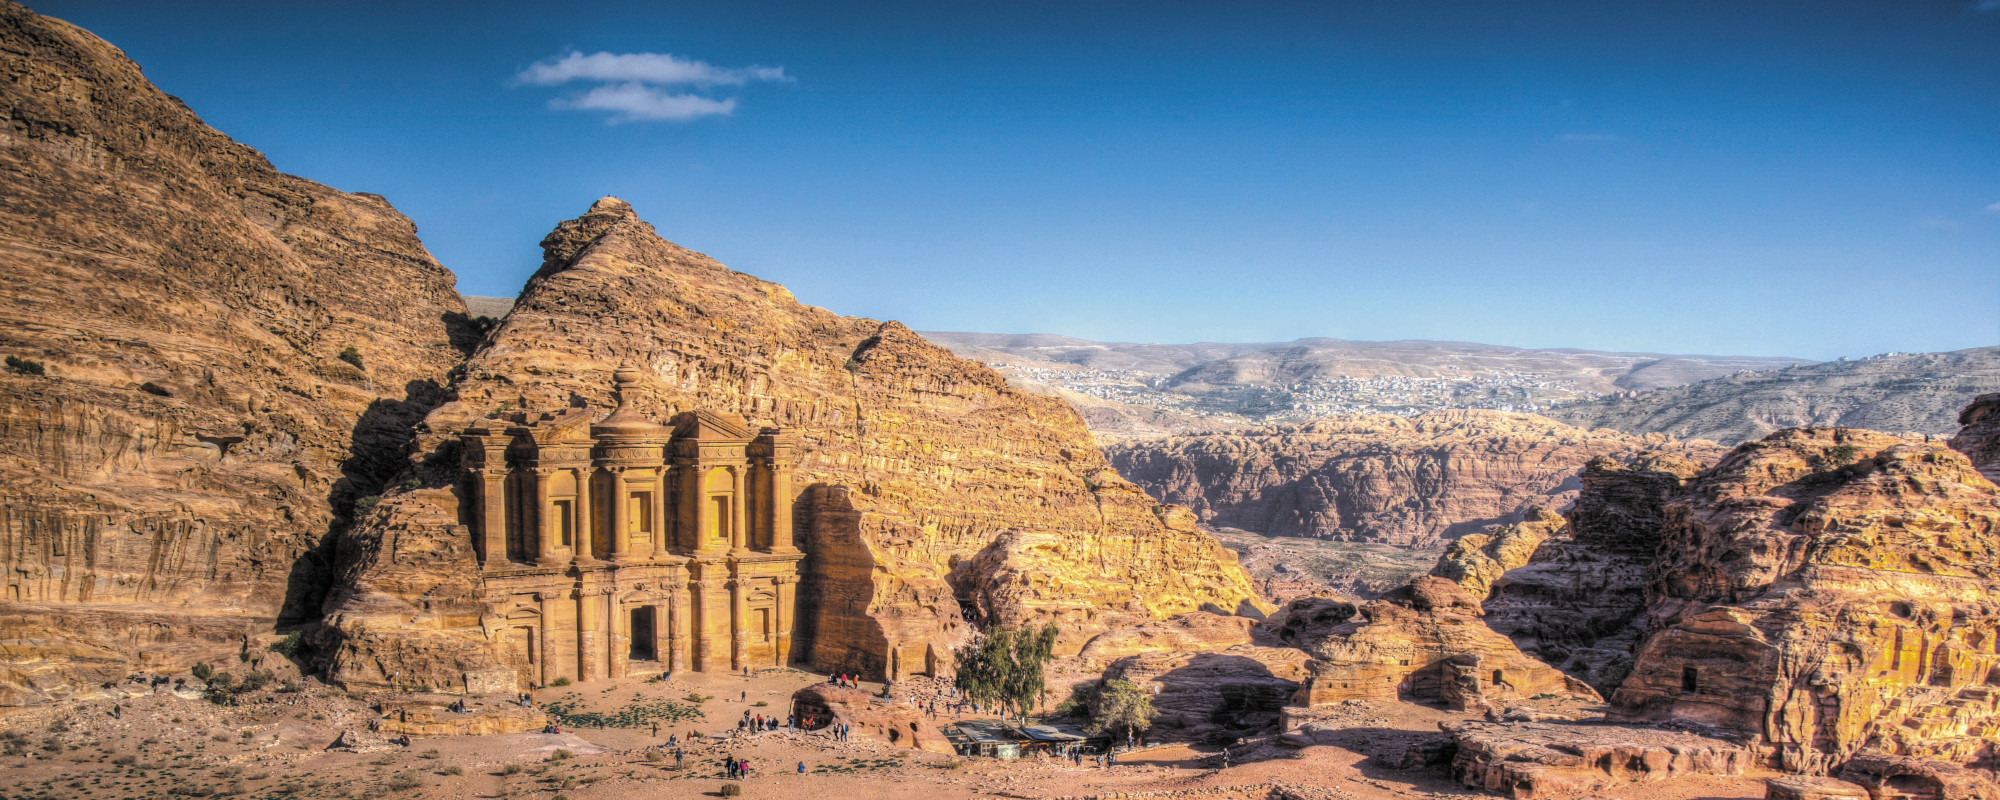 Jordanien - archäologische Stätte in jordanischen Wüste